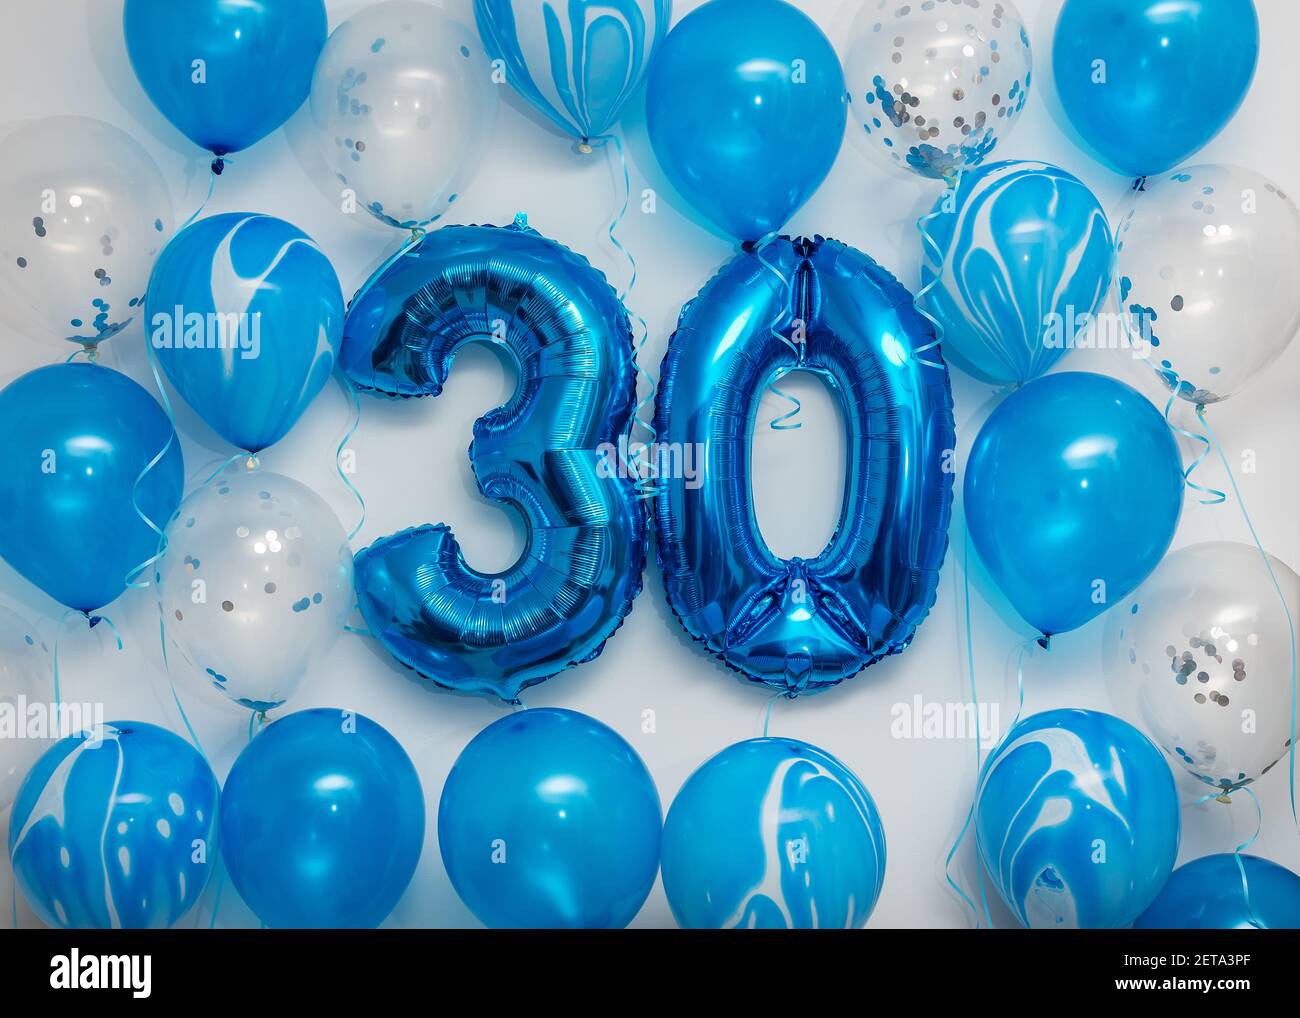 Feliz 30 cumpleaños globos tarjeta de felicitación de fondo